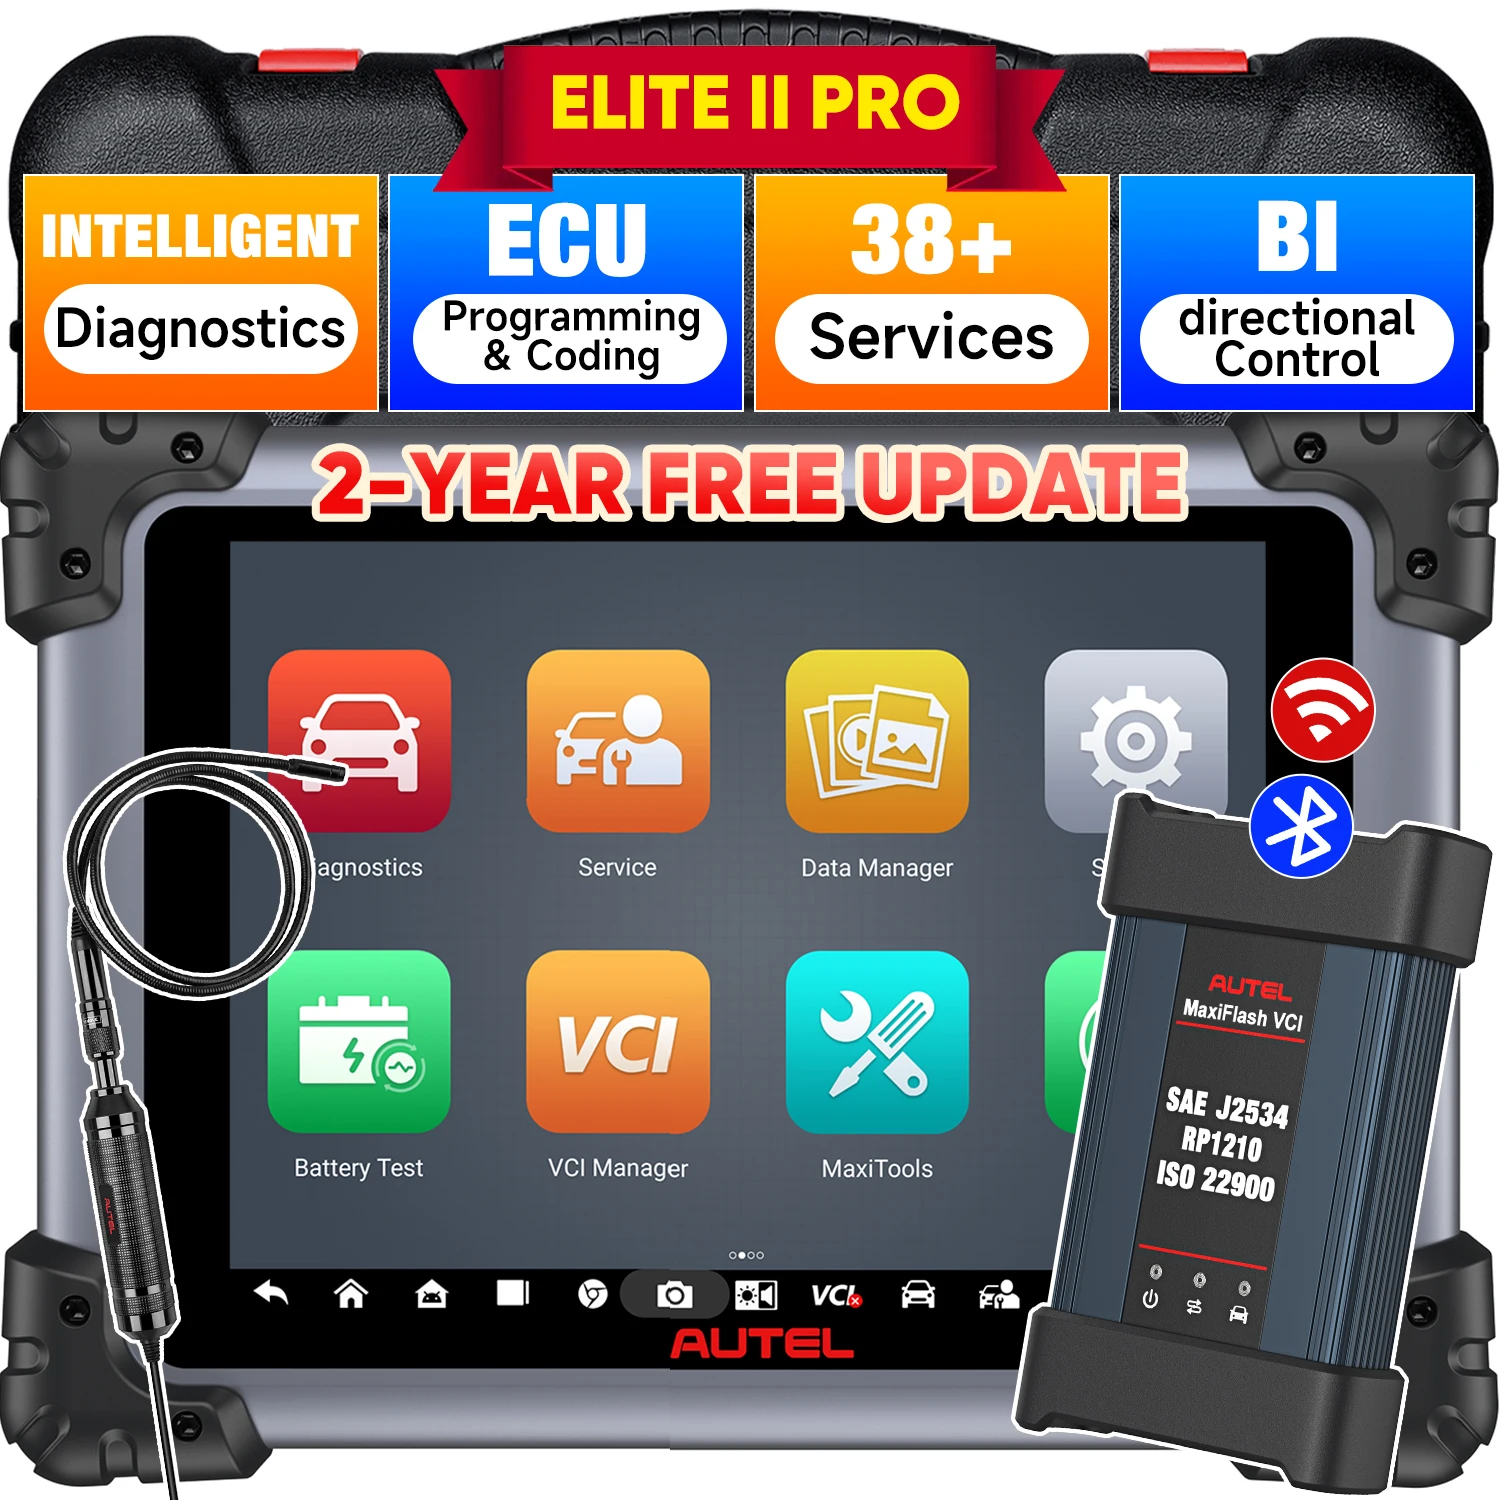 Autel Elite 2 Pro ECU программный сканер Профессиональный диагностический инструмент J2534 CAN FD / DoIP интеллектуальная Диагностика Andorid 10,0